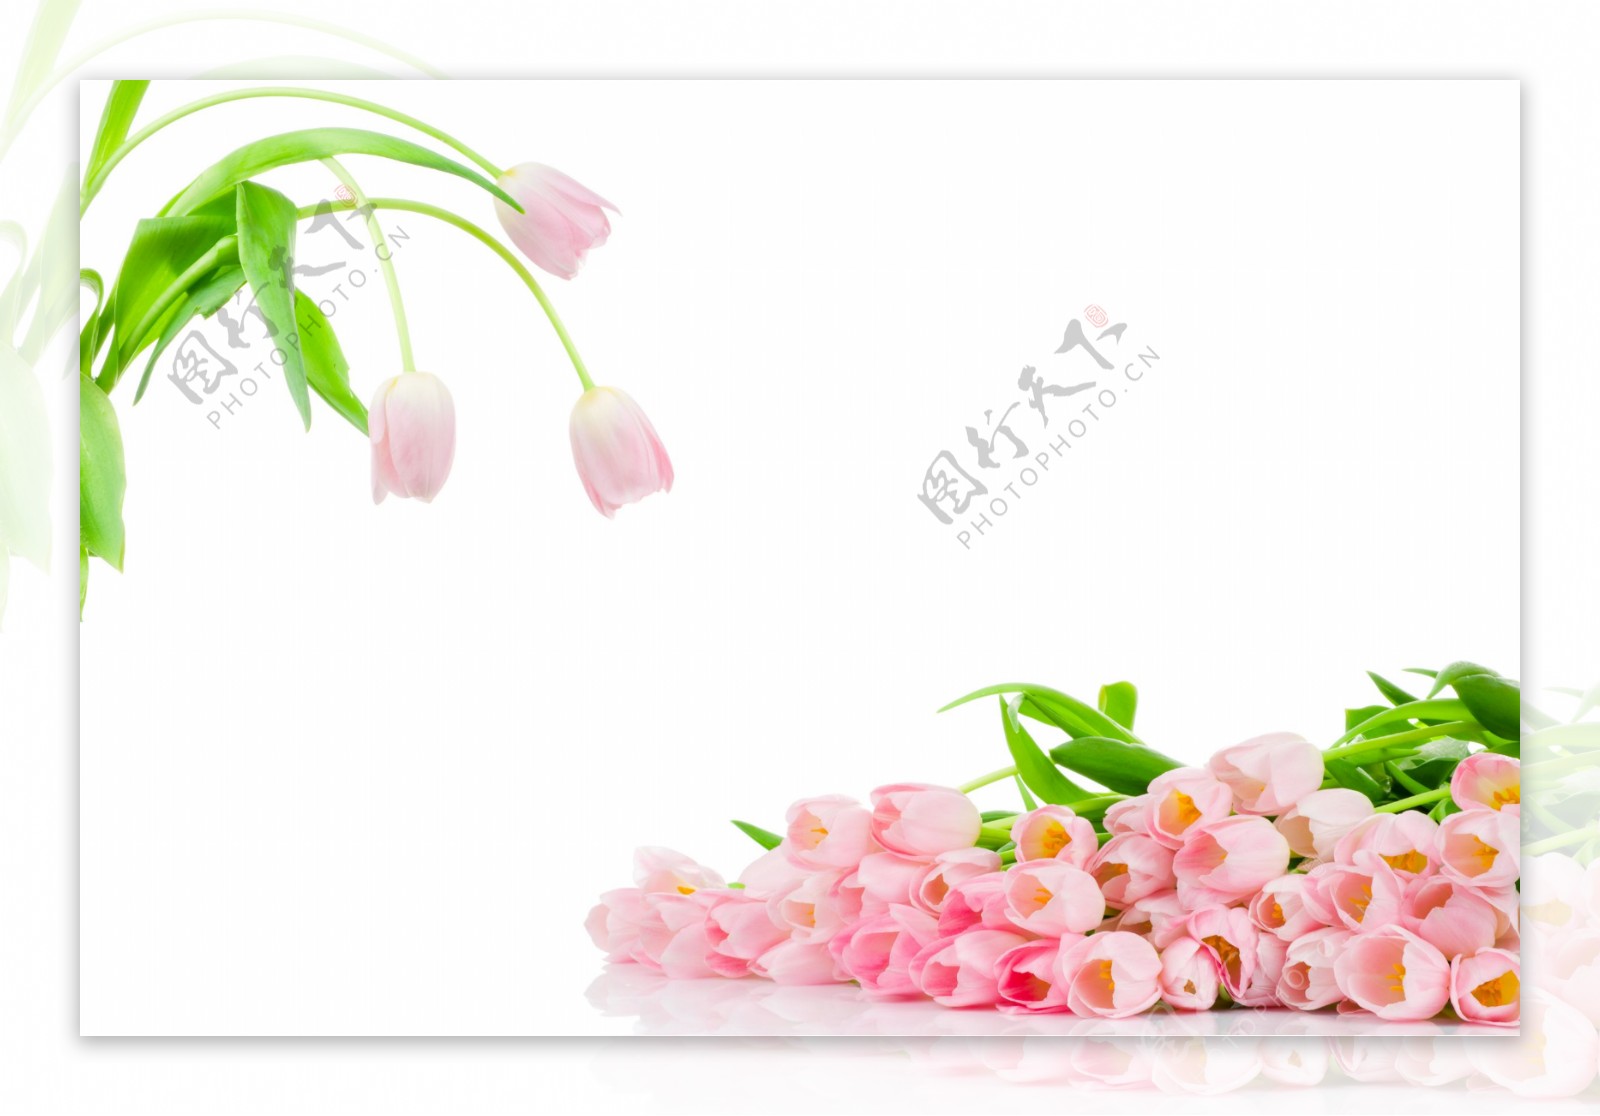 清晰粉红色郁金香花朵图片